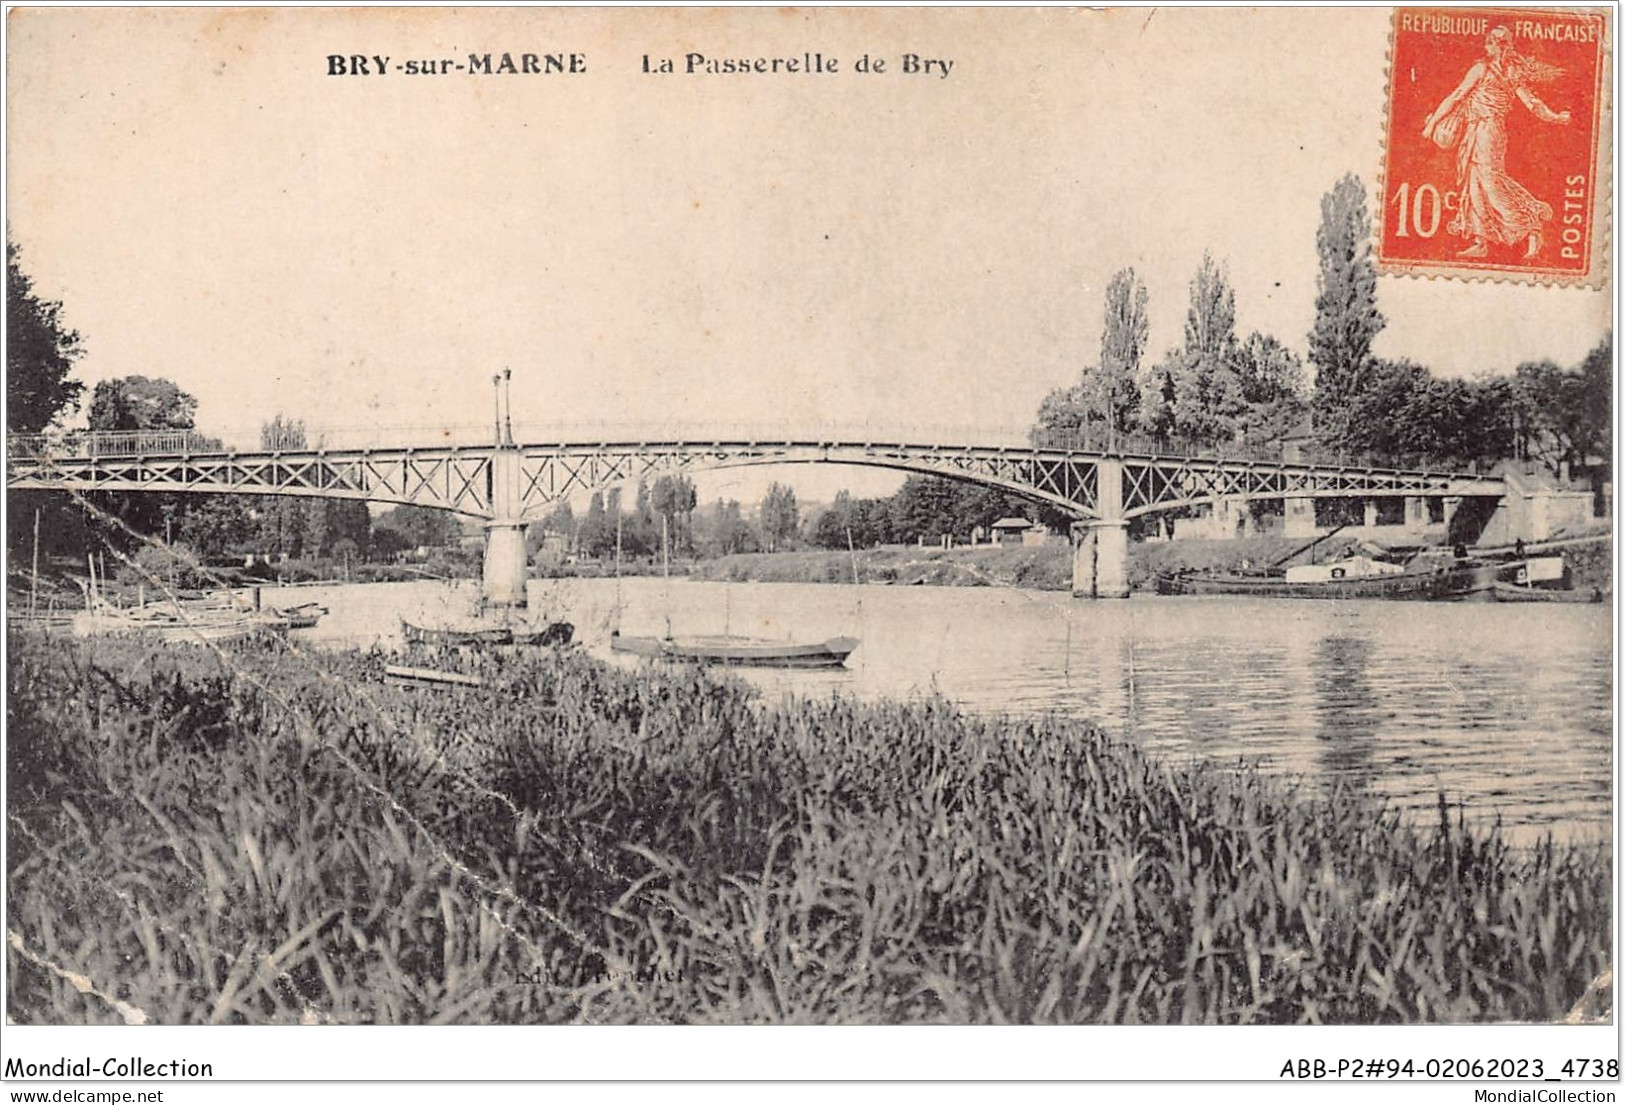 ABBP2-94-0138 - BRY-SUR-MARNE - La Passerelle De Bry - Bry Sur Marne